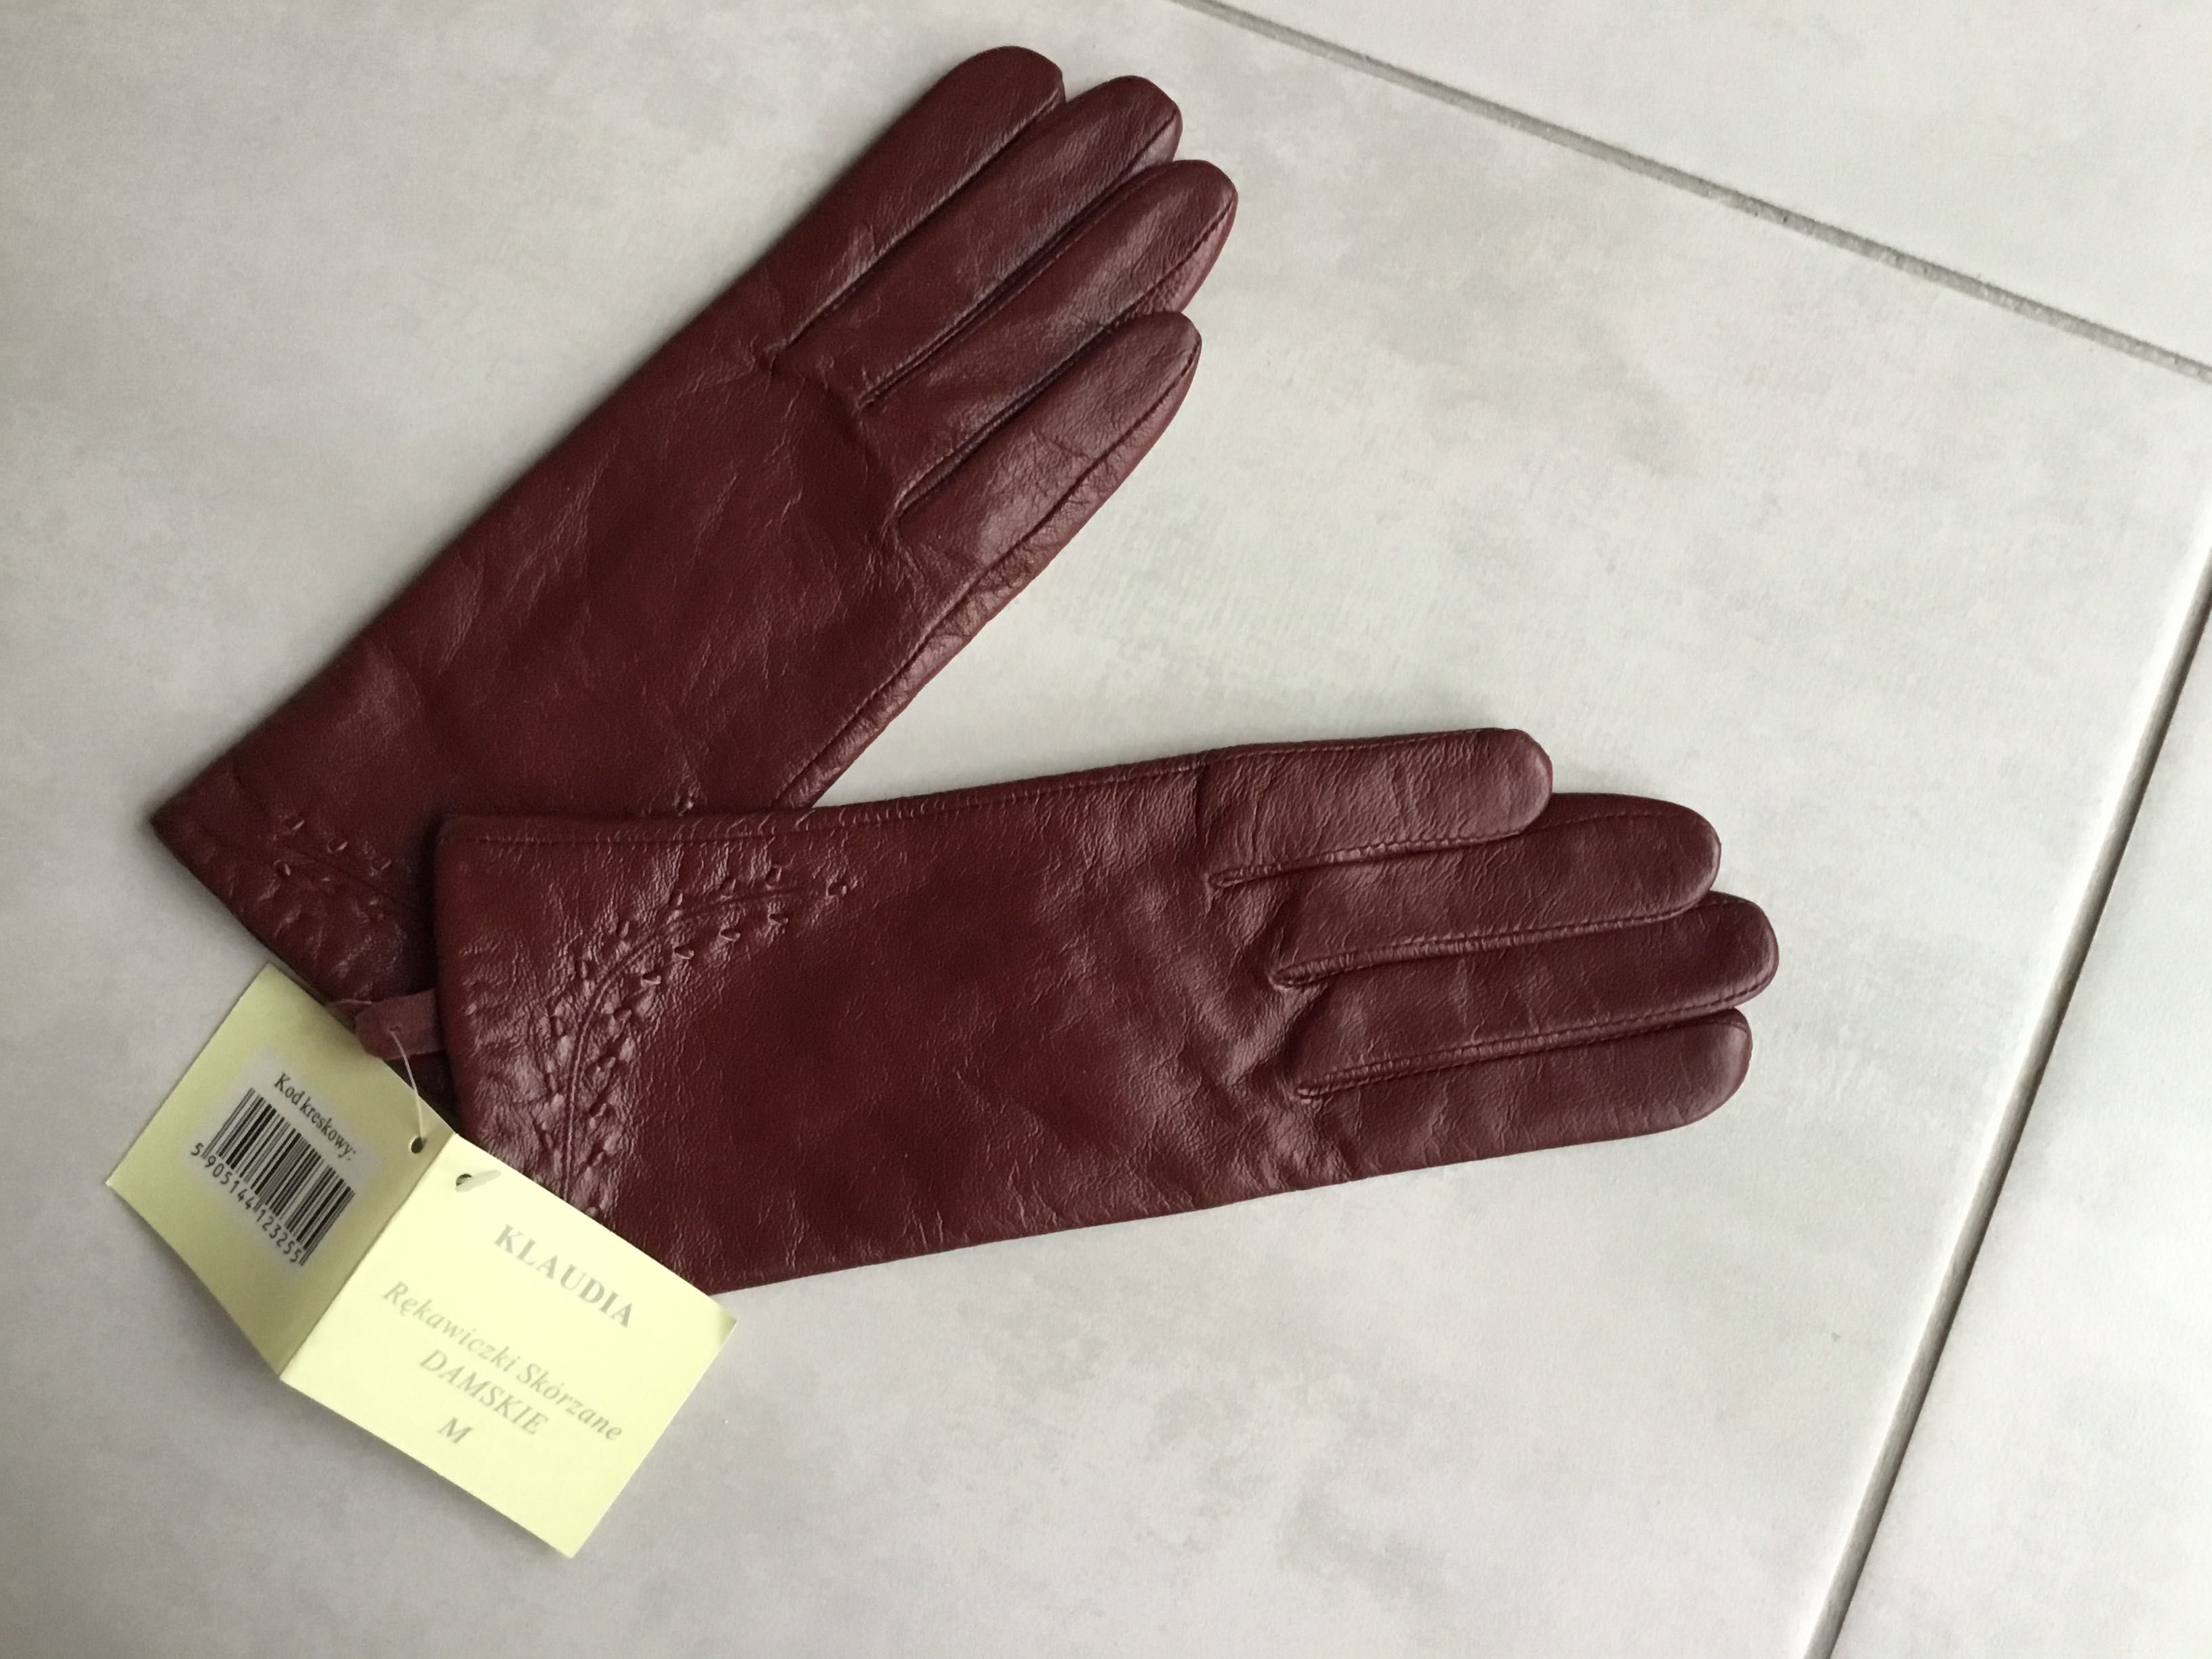 NOWE eleganckie rękawiczki, wysyłka w dniu zakupu